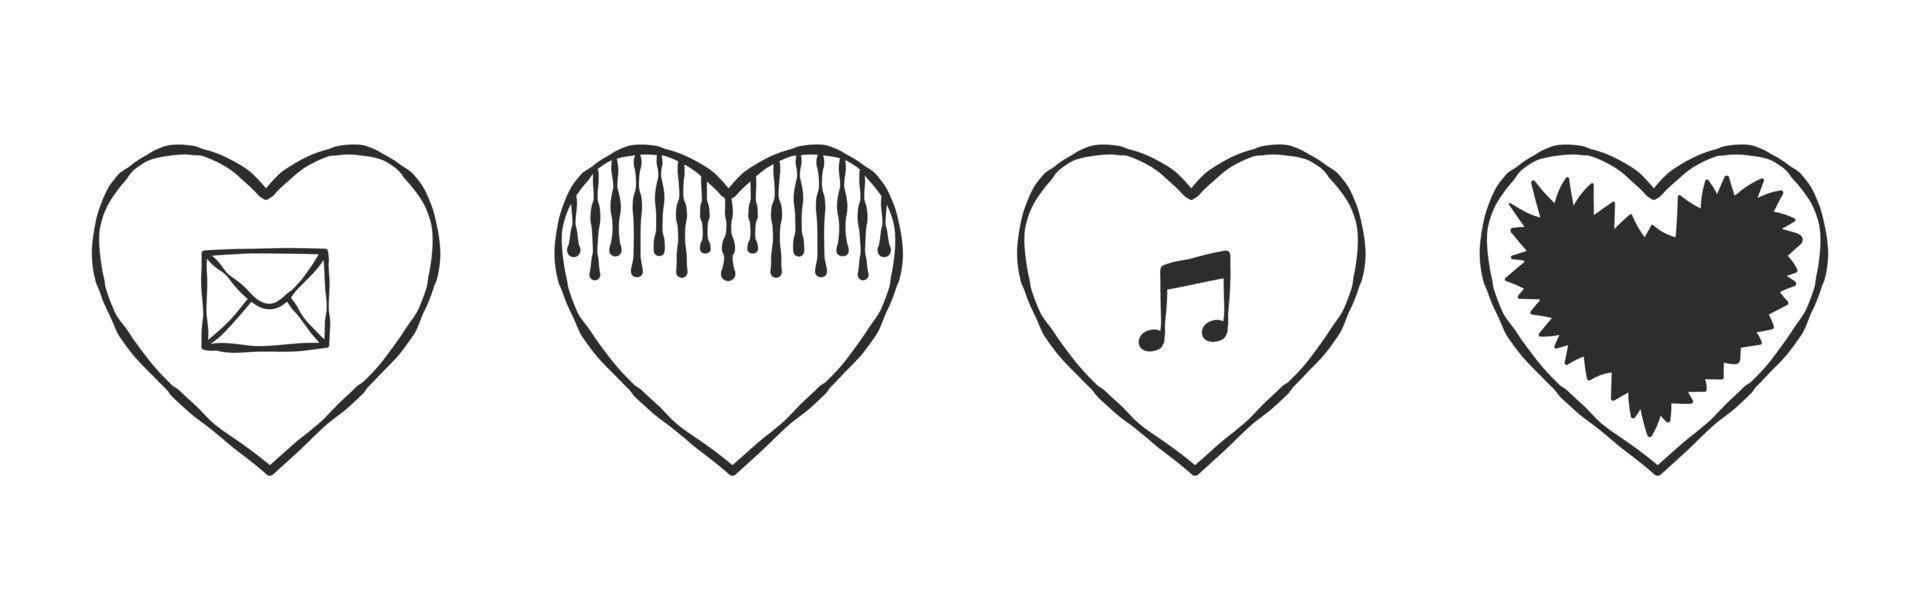 Sammlung von Herzsymbolen. von hand gezeichnete herzen mit verschiedenen zeichen. Vektorbilder vektor